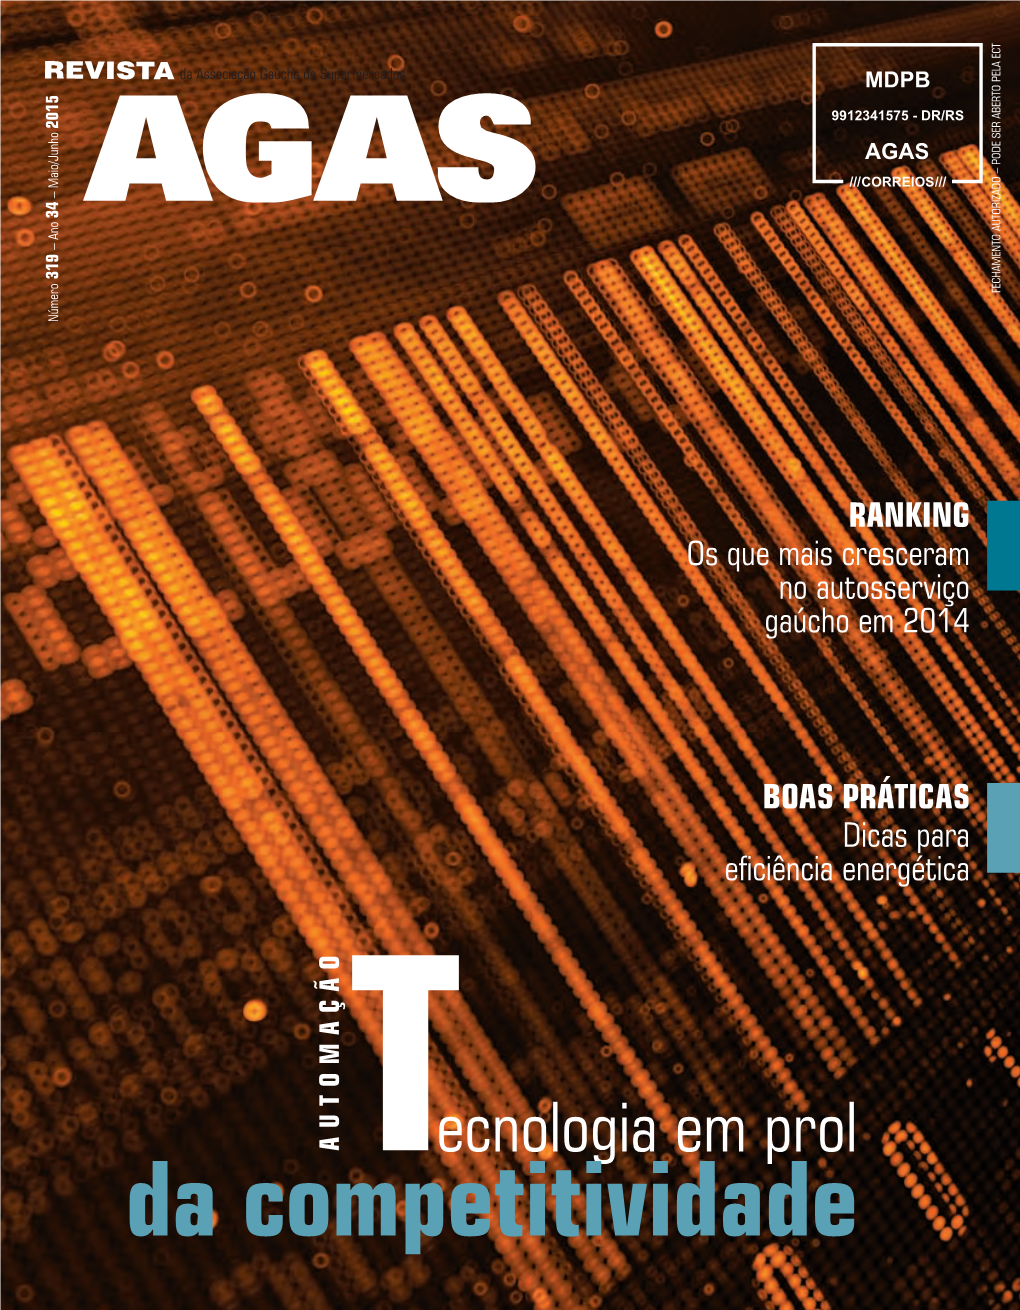 Revista AGAS